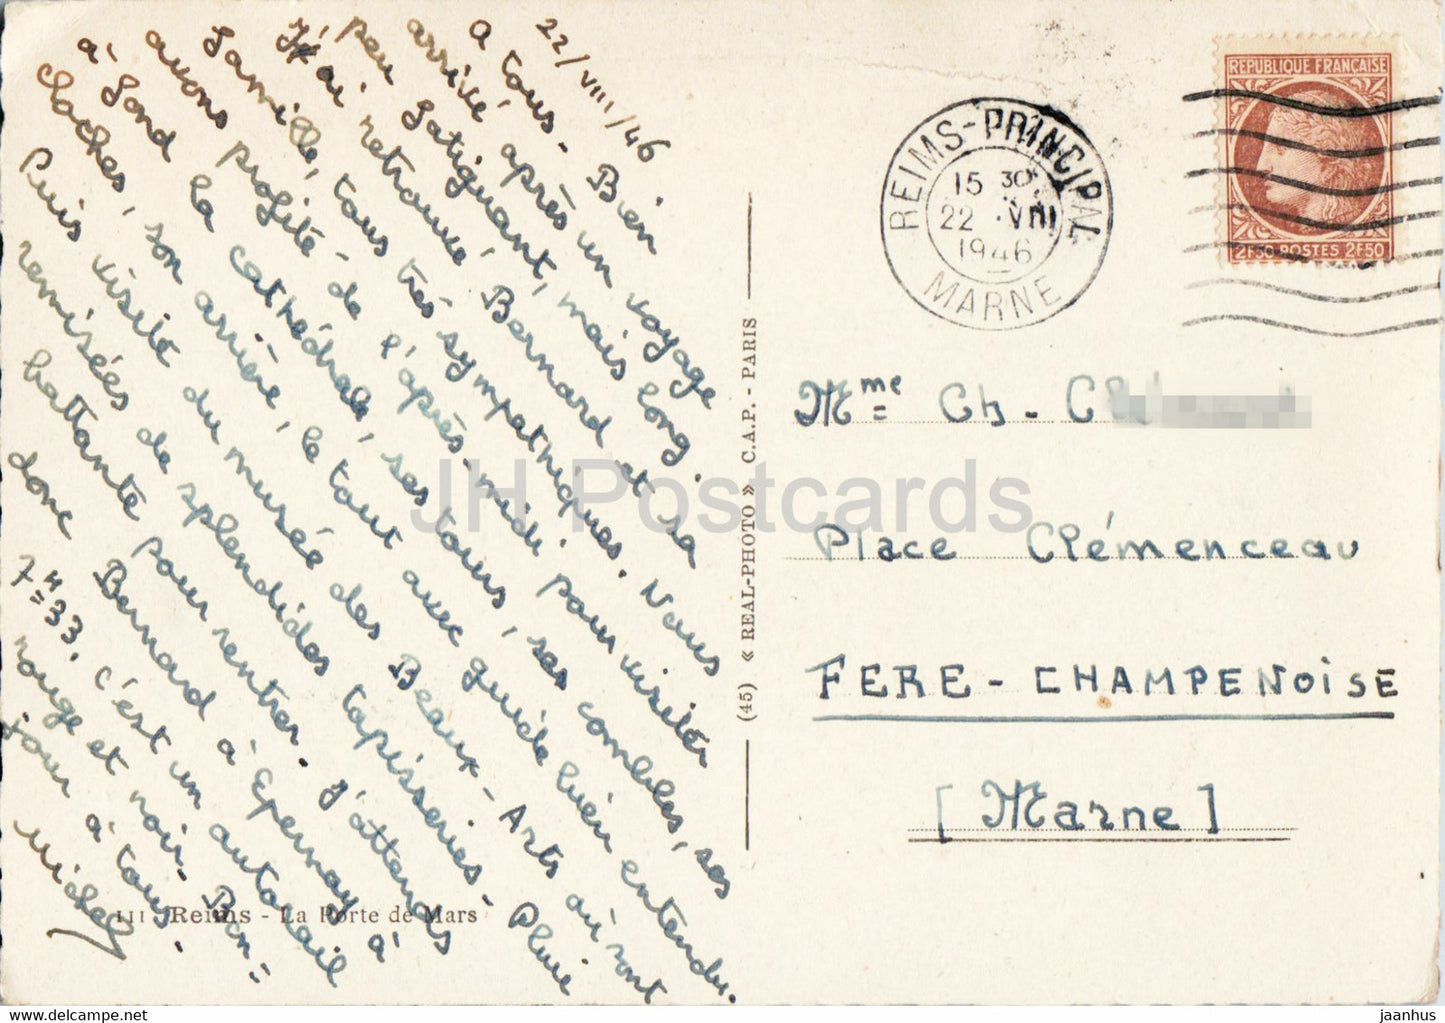 Reims - La Porte de Mars - ancient architecture -  old postcard - 1946 - France - used